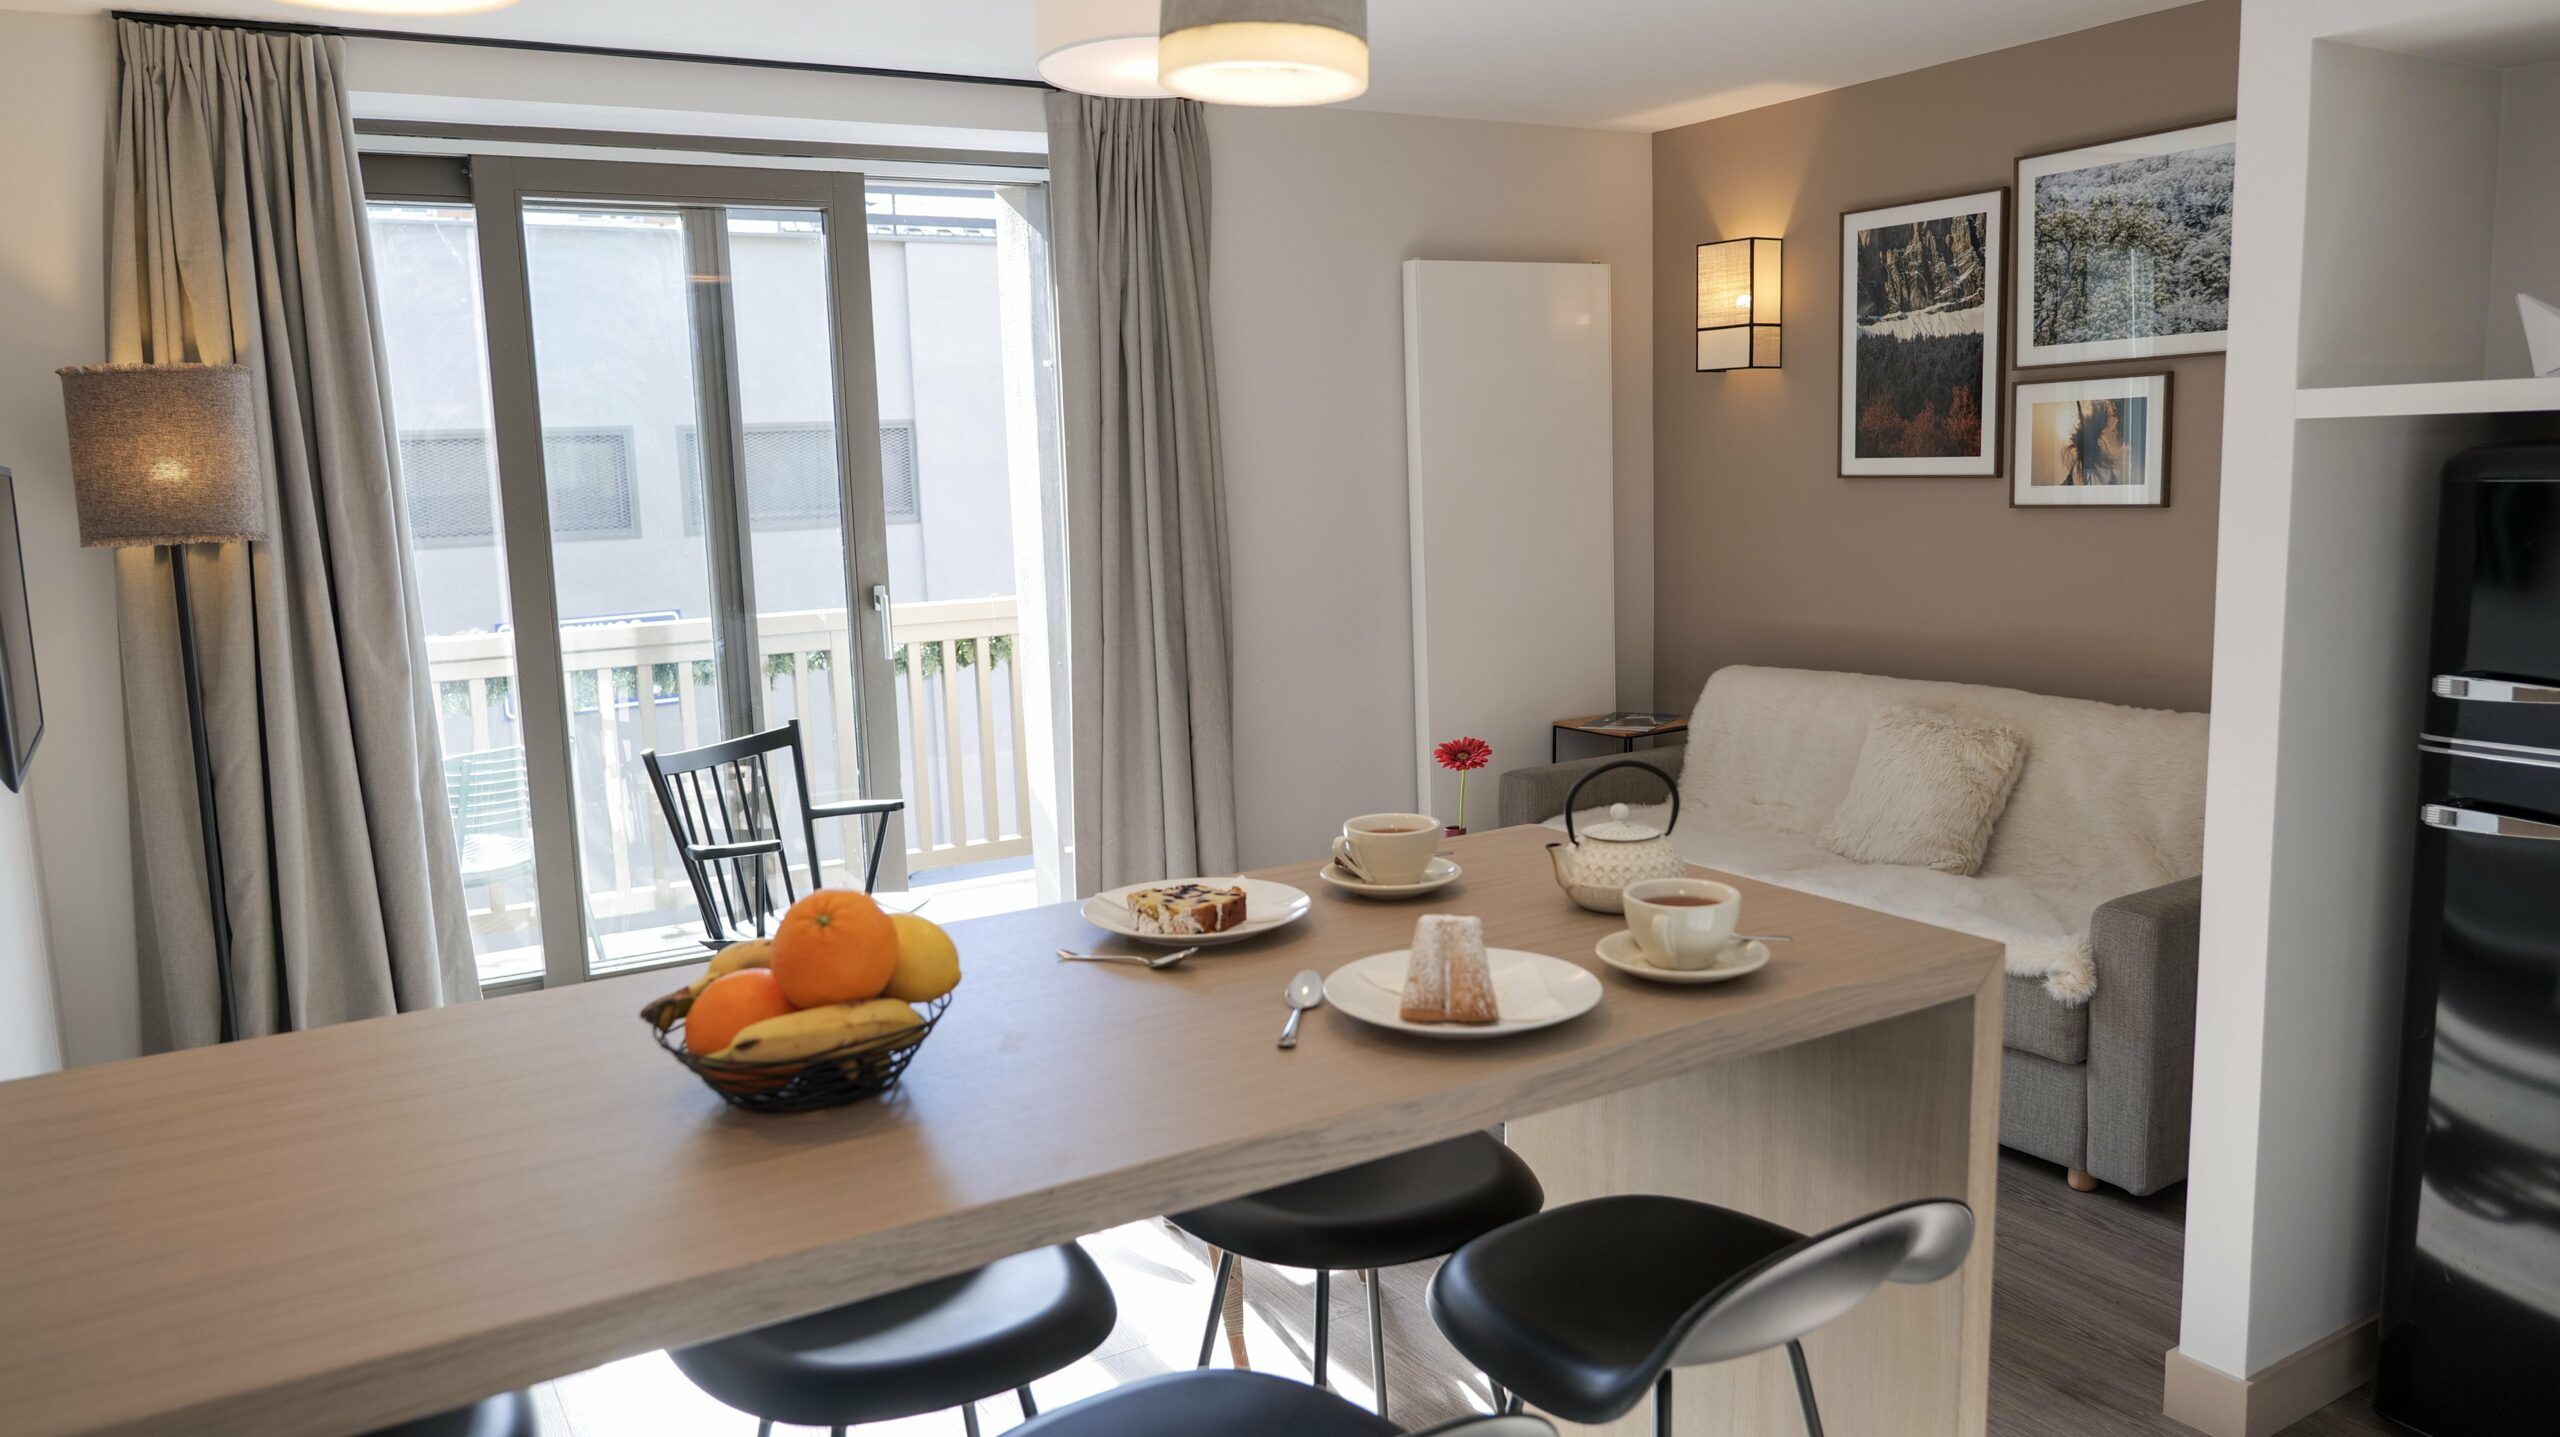 Appart'hôtel chamonix cosy duplex familial cuisine et salon